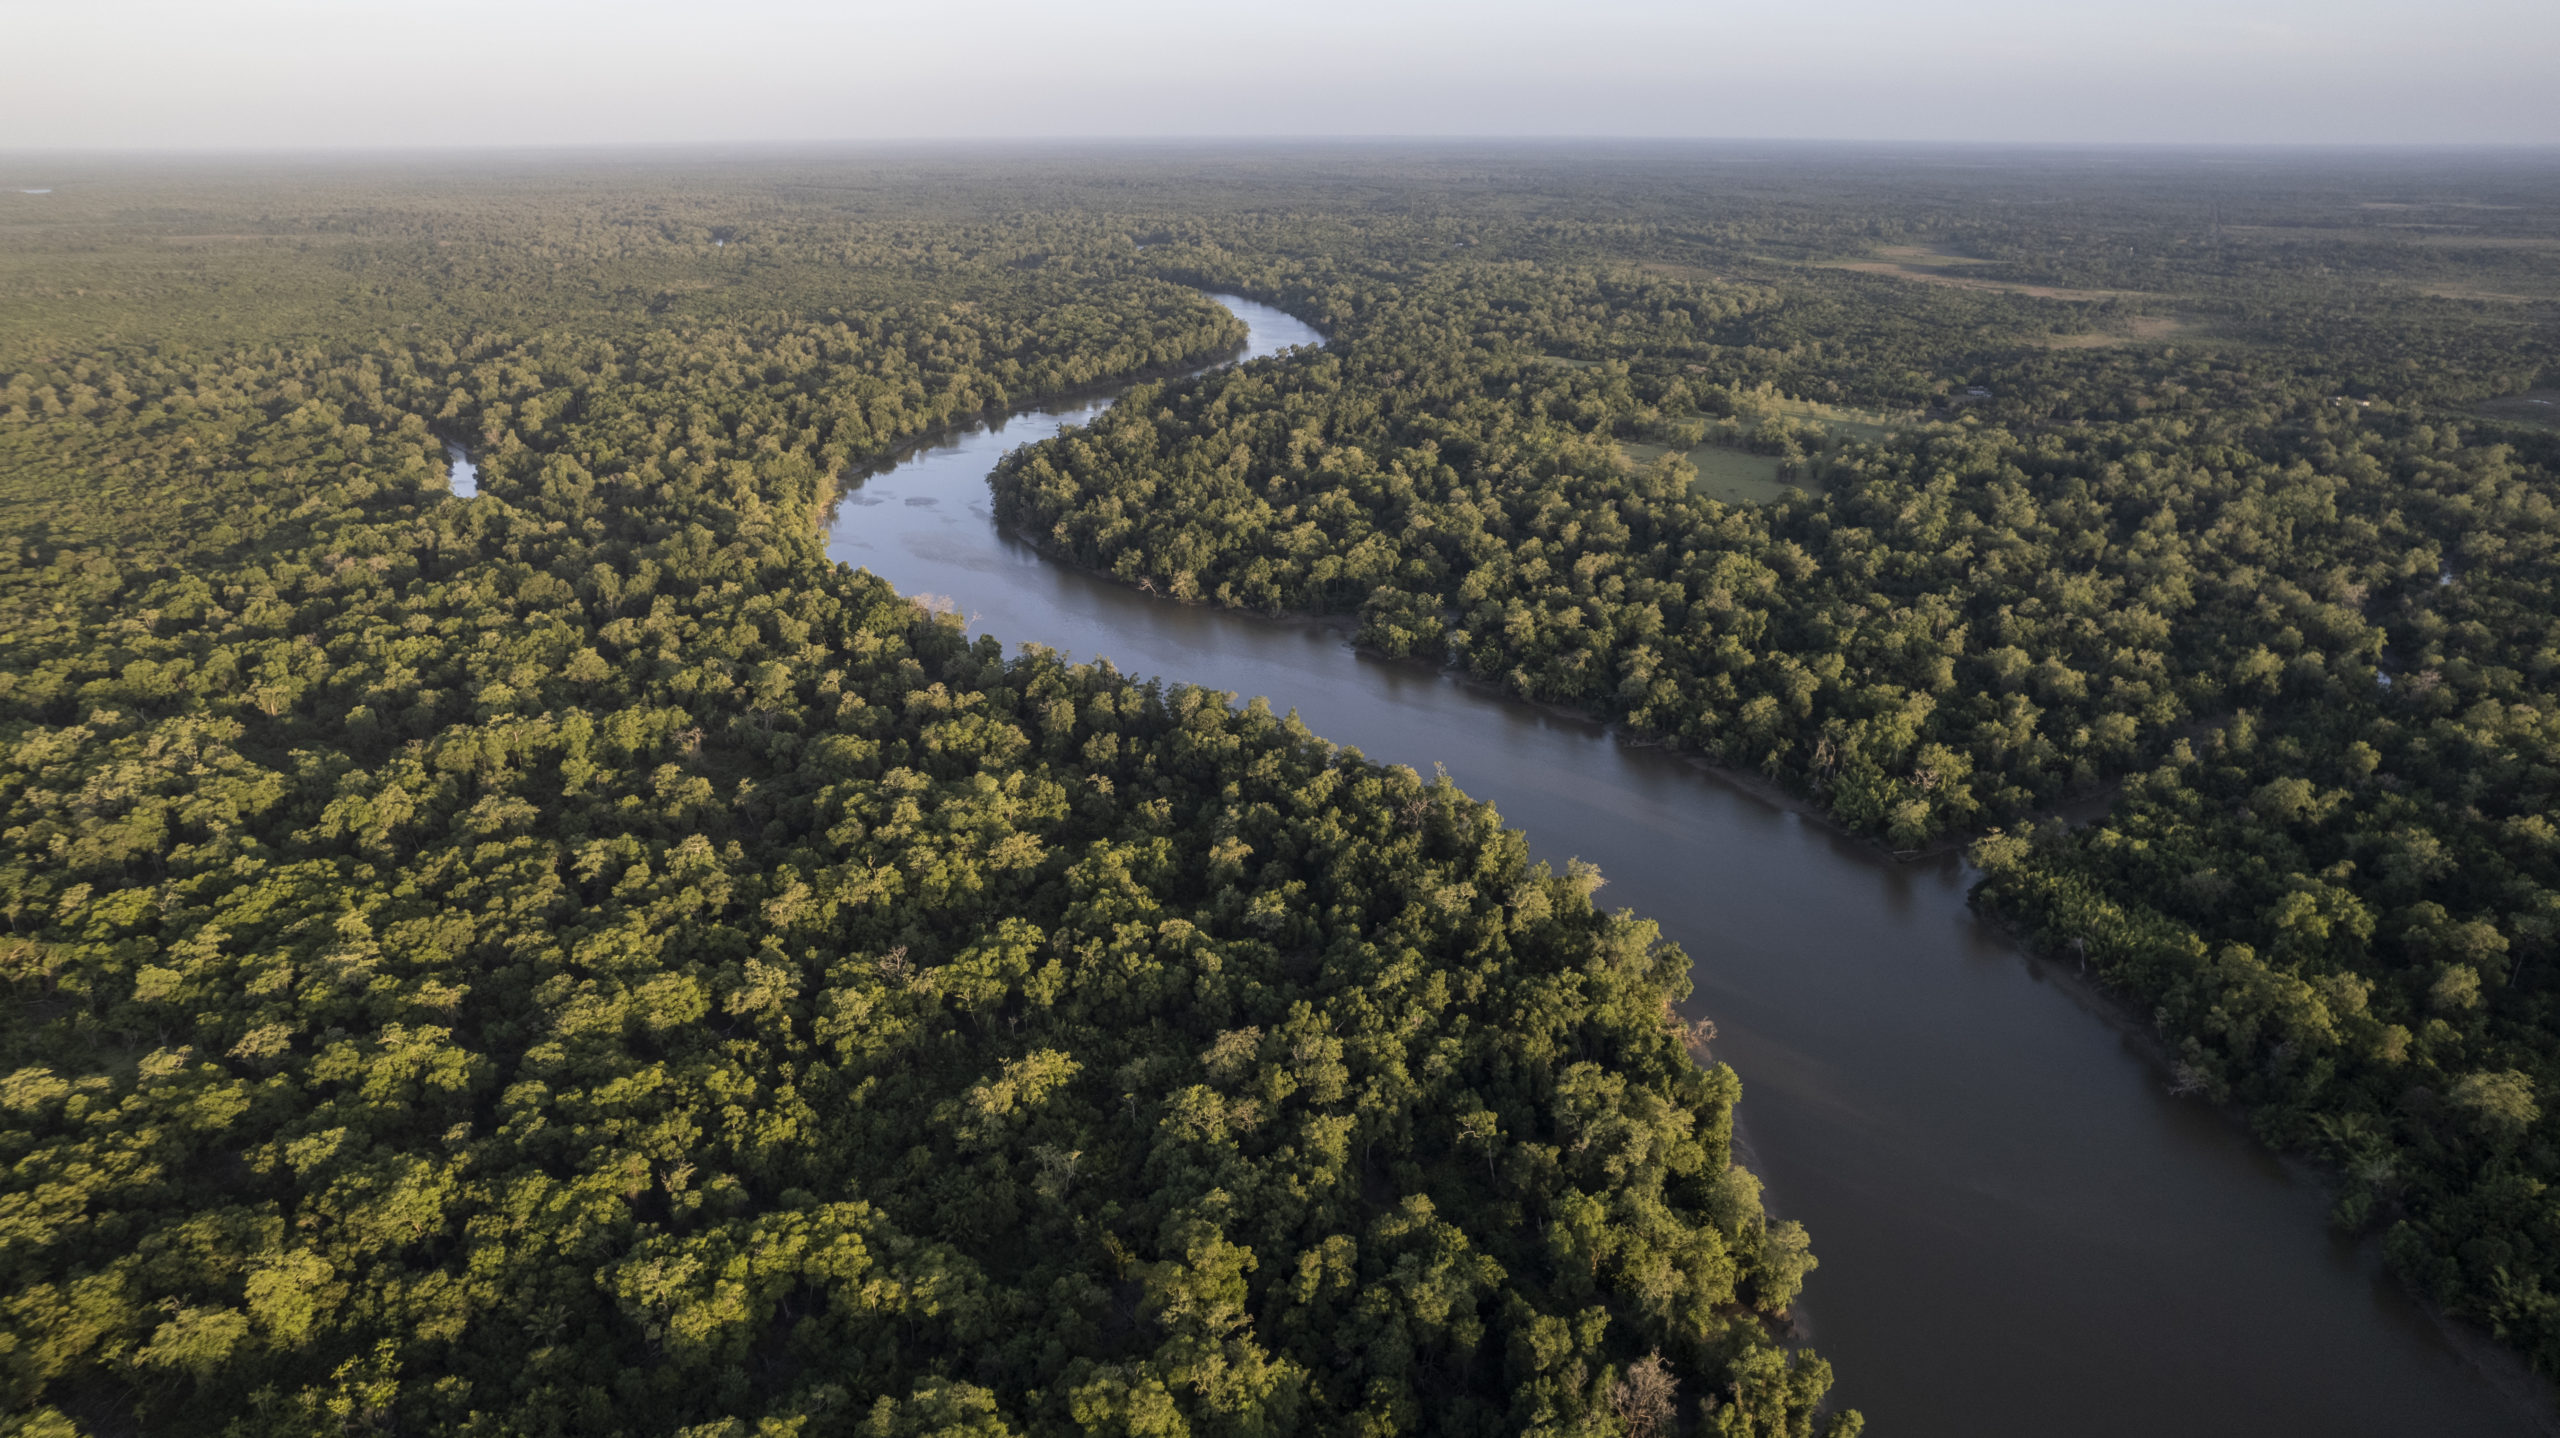 Petrobras adquire créditos de carbono gerados a partir da preservação de 570 hectares da floresta amazônica. Na imagem: Grande volume denso de árvores na Floresta amazônica cortada por rio em dia ensolarado (Foto: Anderson Coelho/E+/Getty Images)